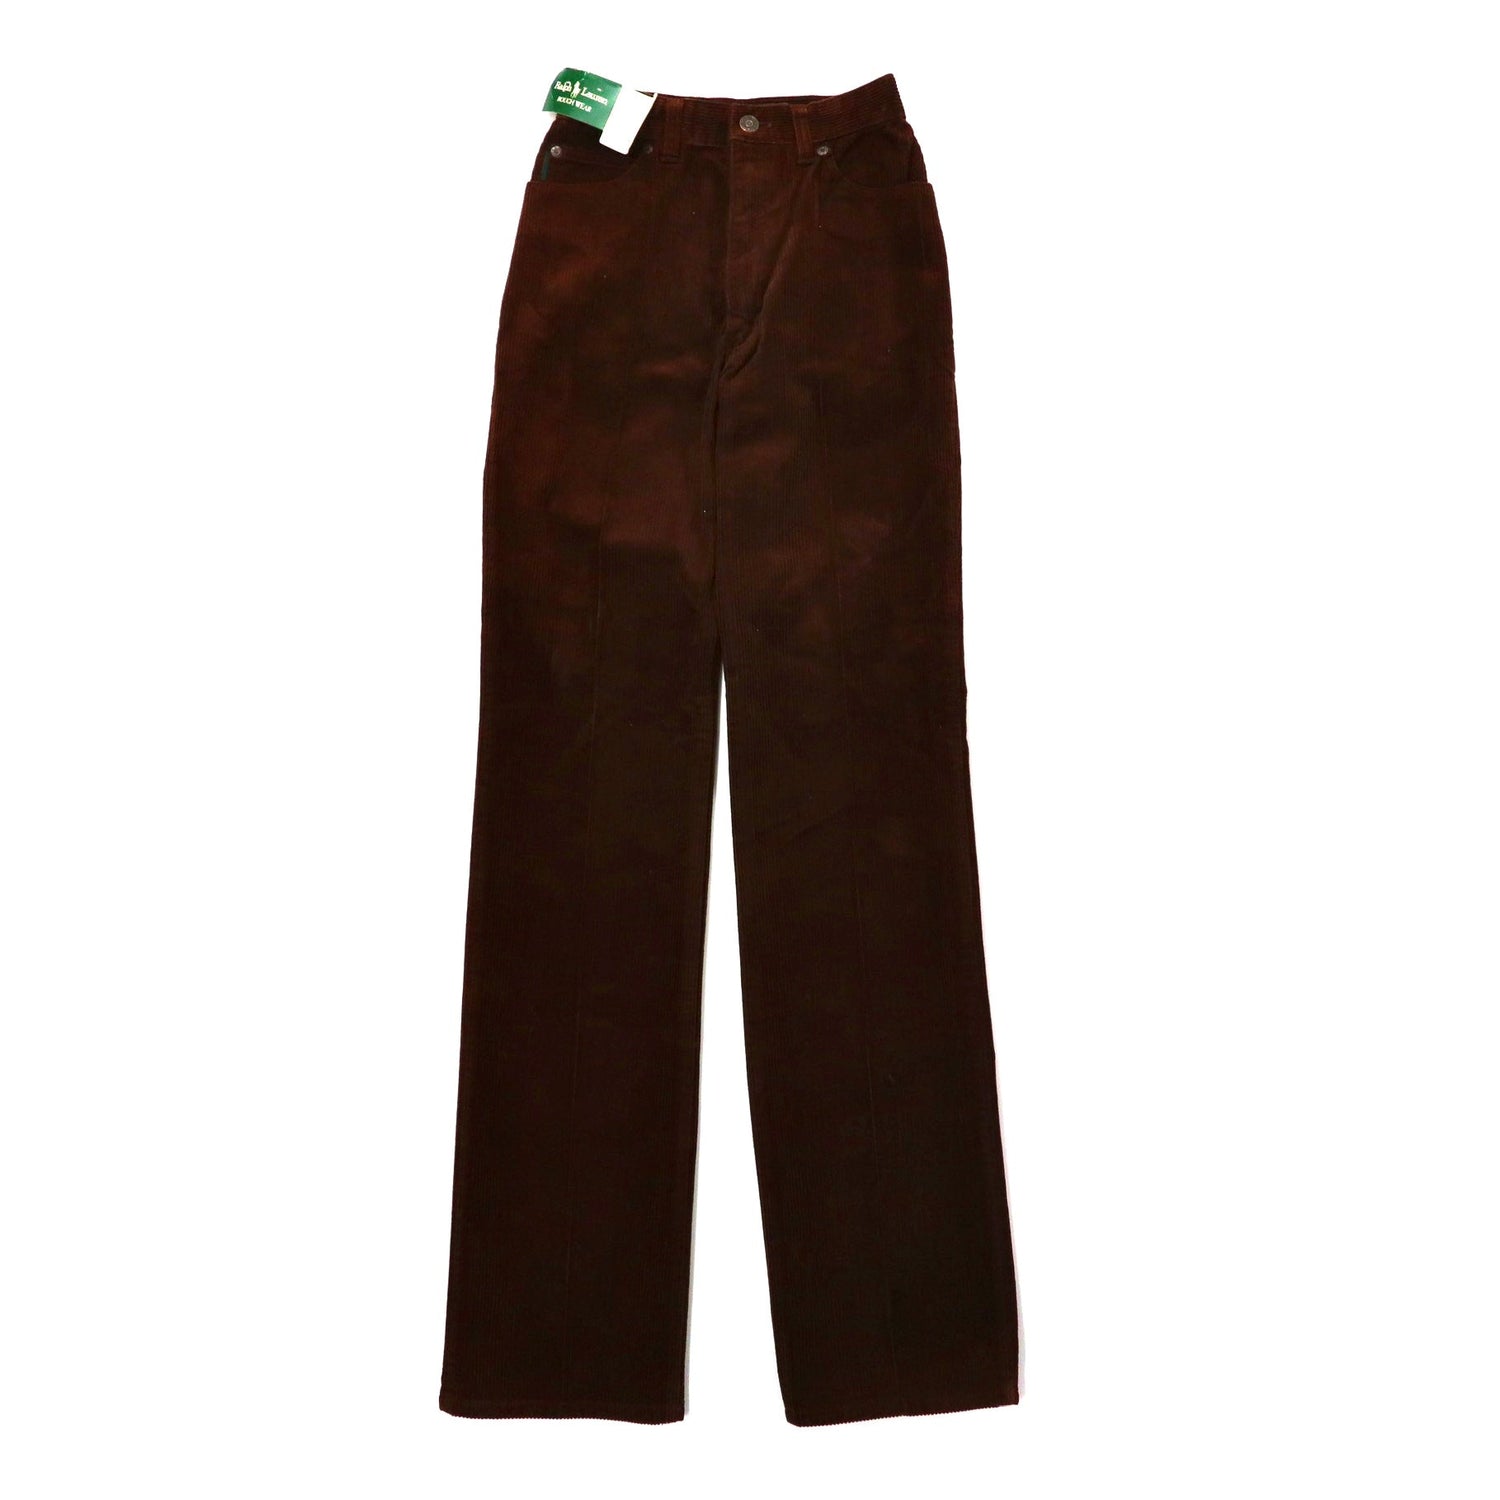 RALPH LAUREN Corduroy Pants 27 Brown Cotton Leather Patch ROUGH ...